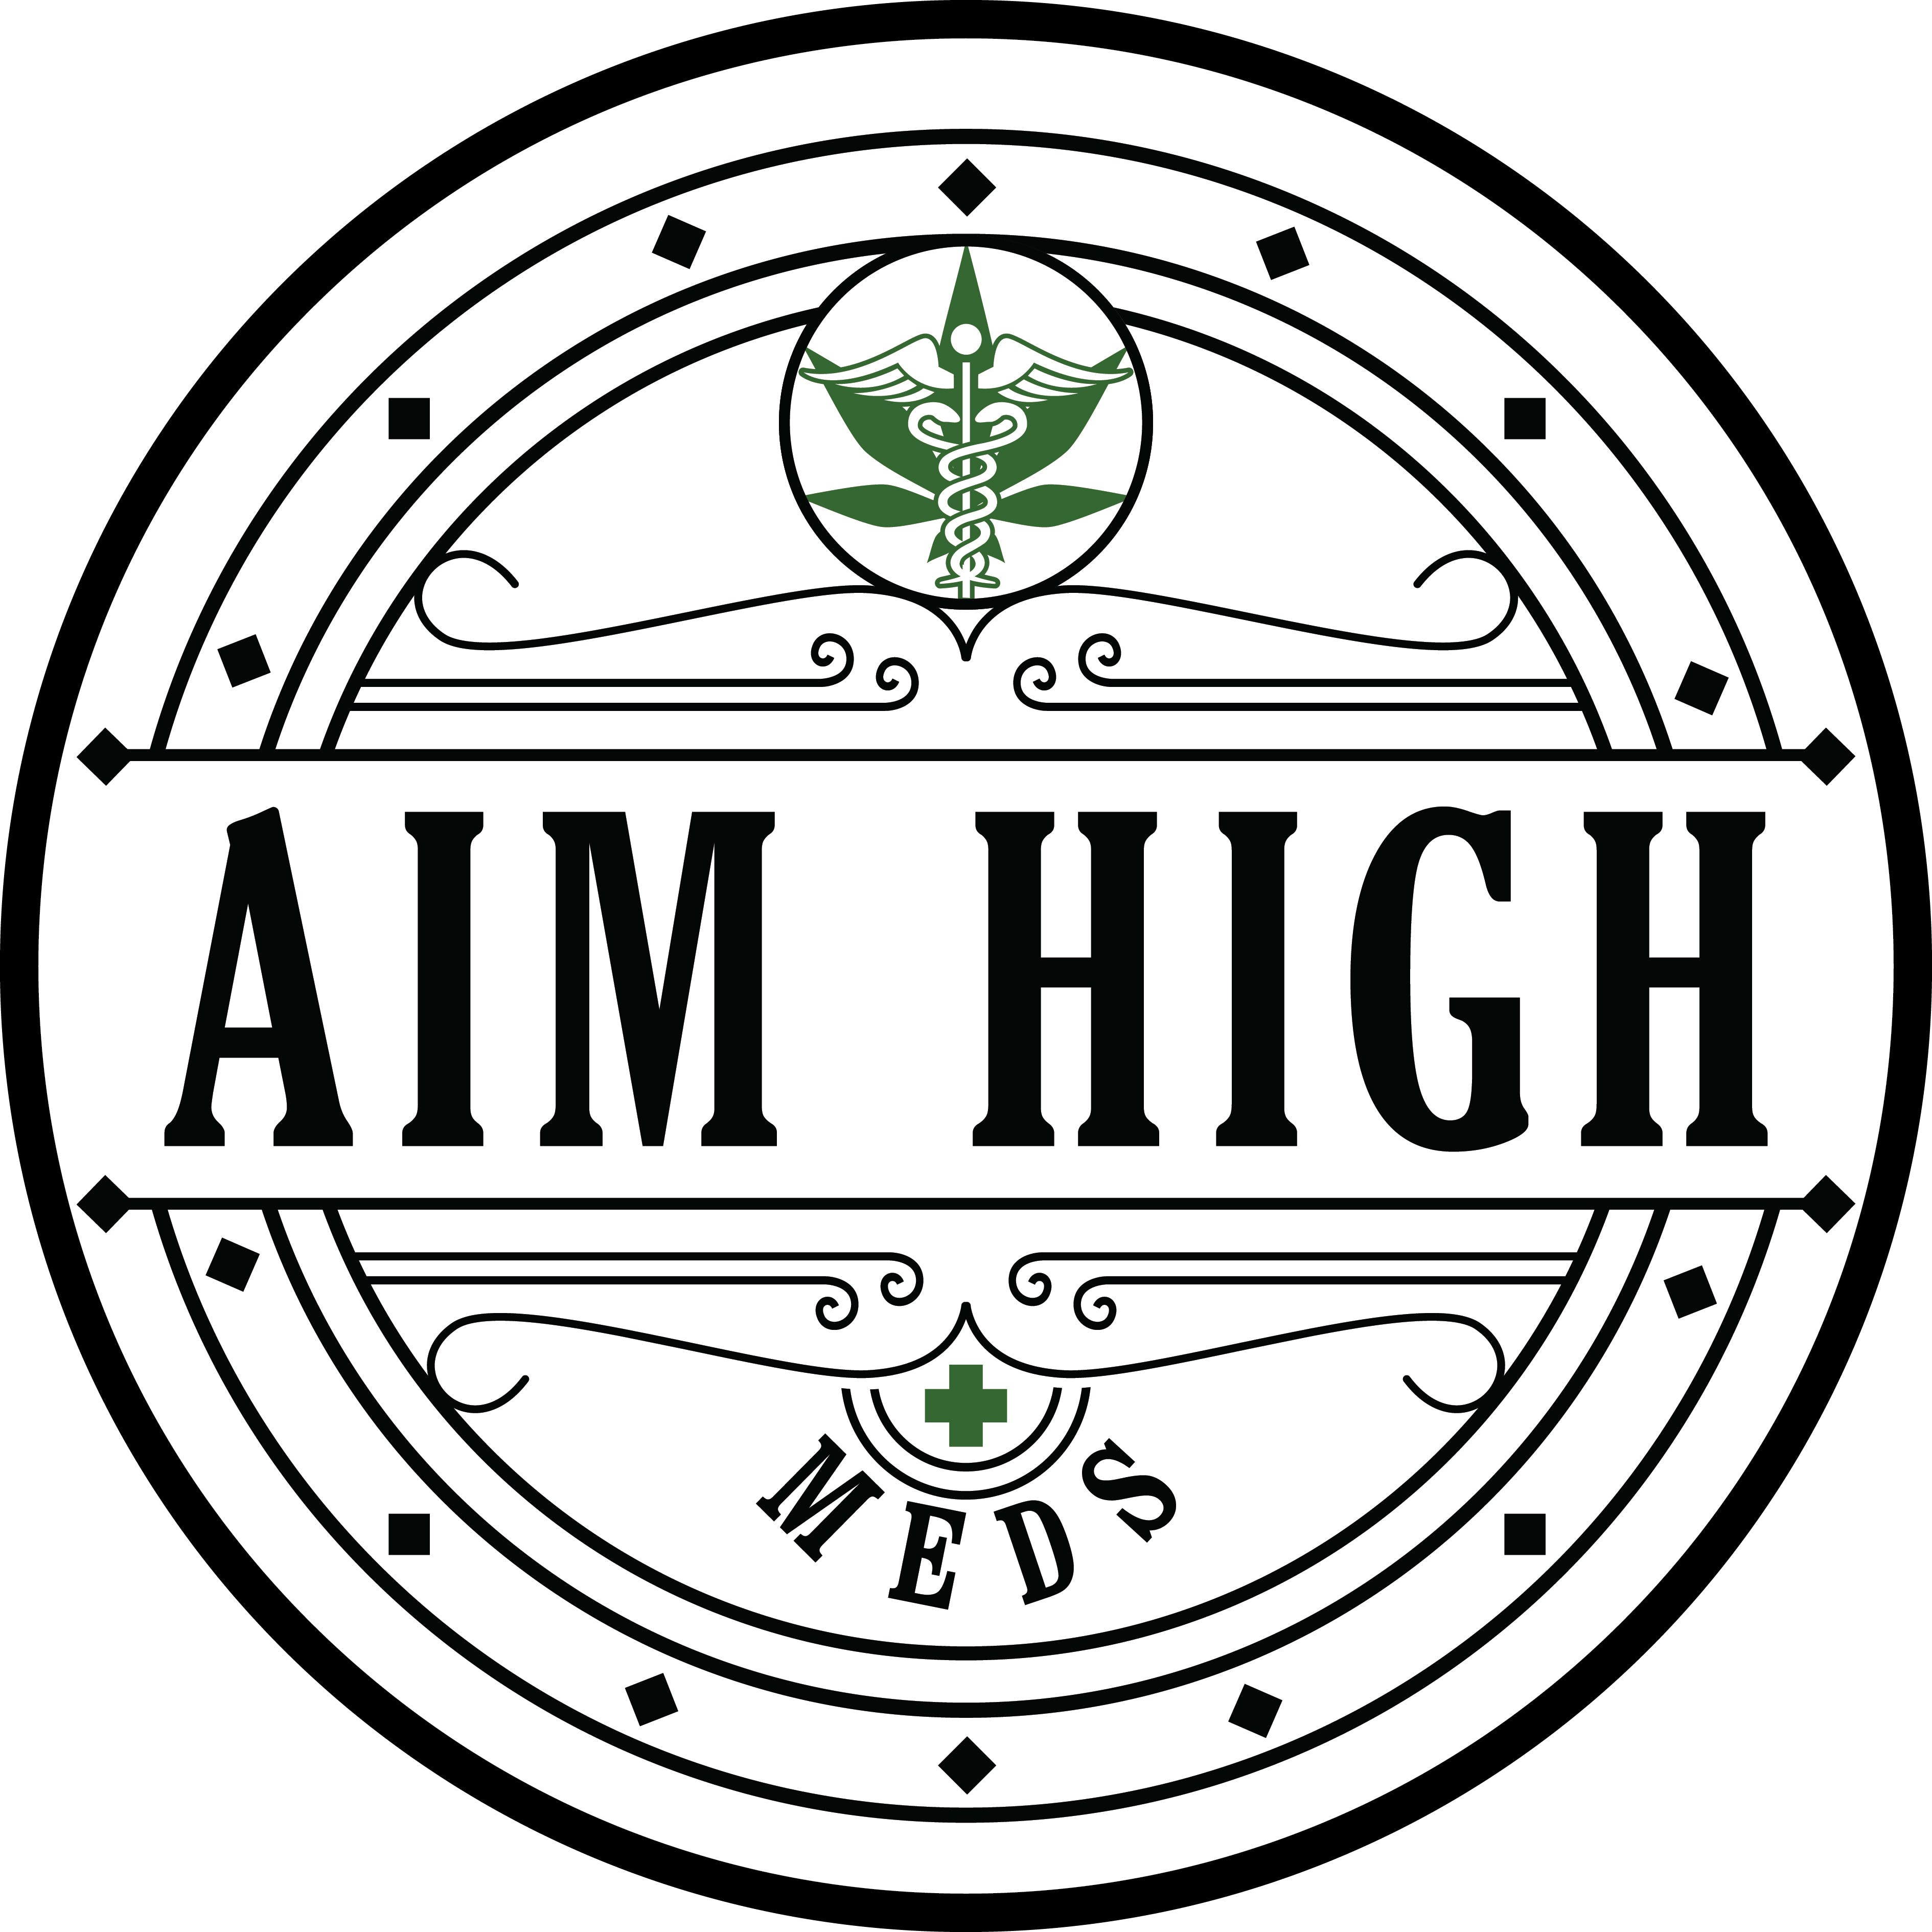 Aim High Meds - Medical Marijuana Doctors - Cannabizme.com